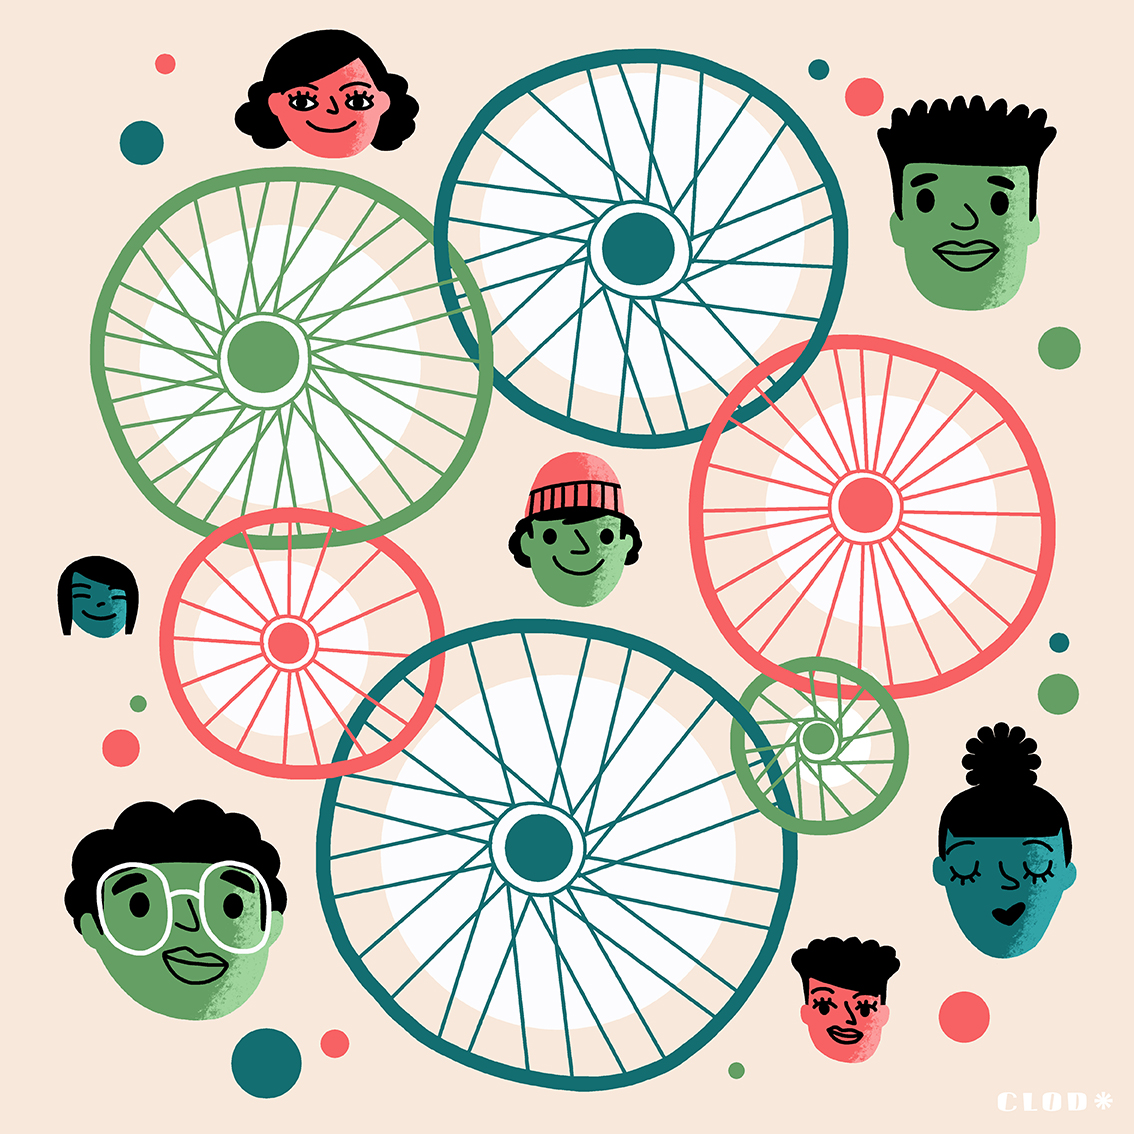 185 raisons de faire du vélo, une liste établie par carfree et illustrée par Clod illustrateur